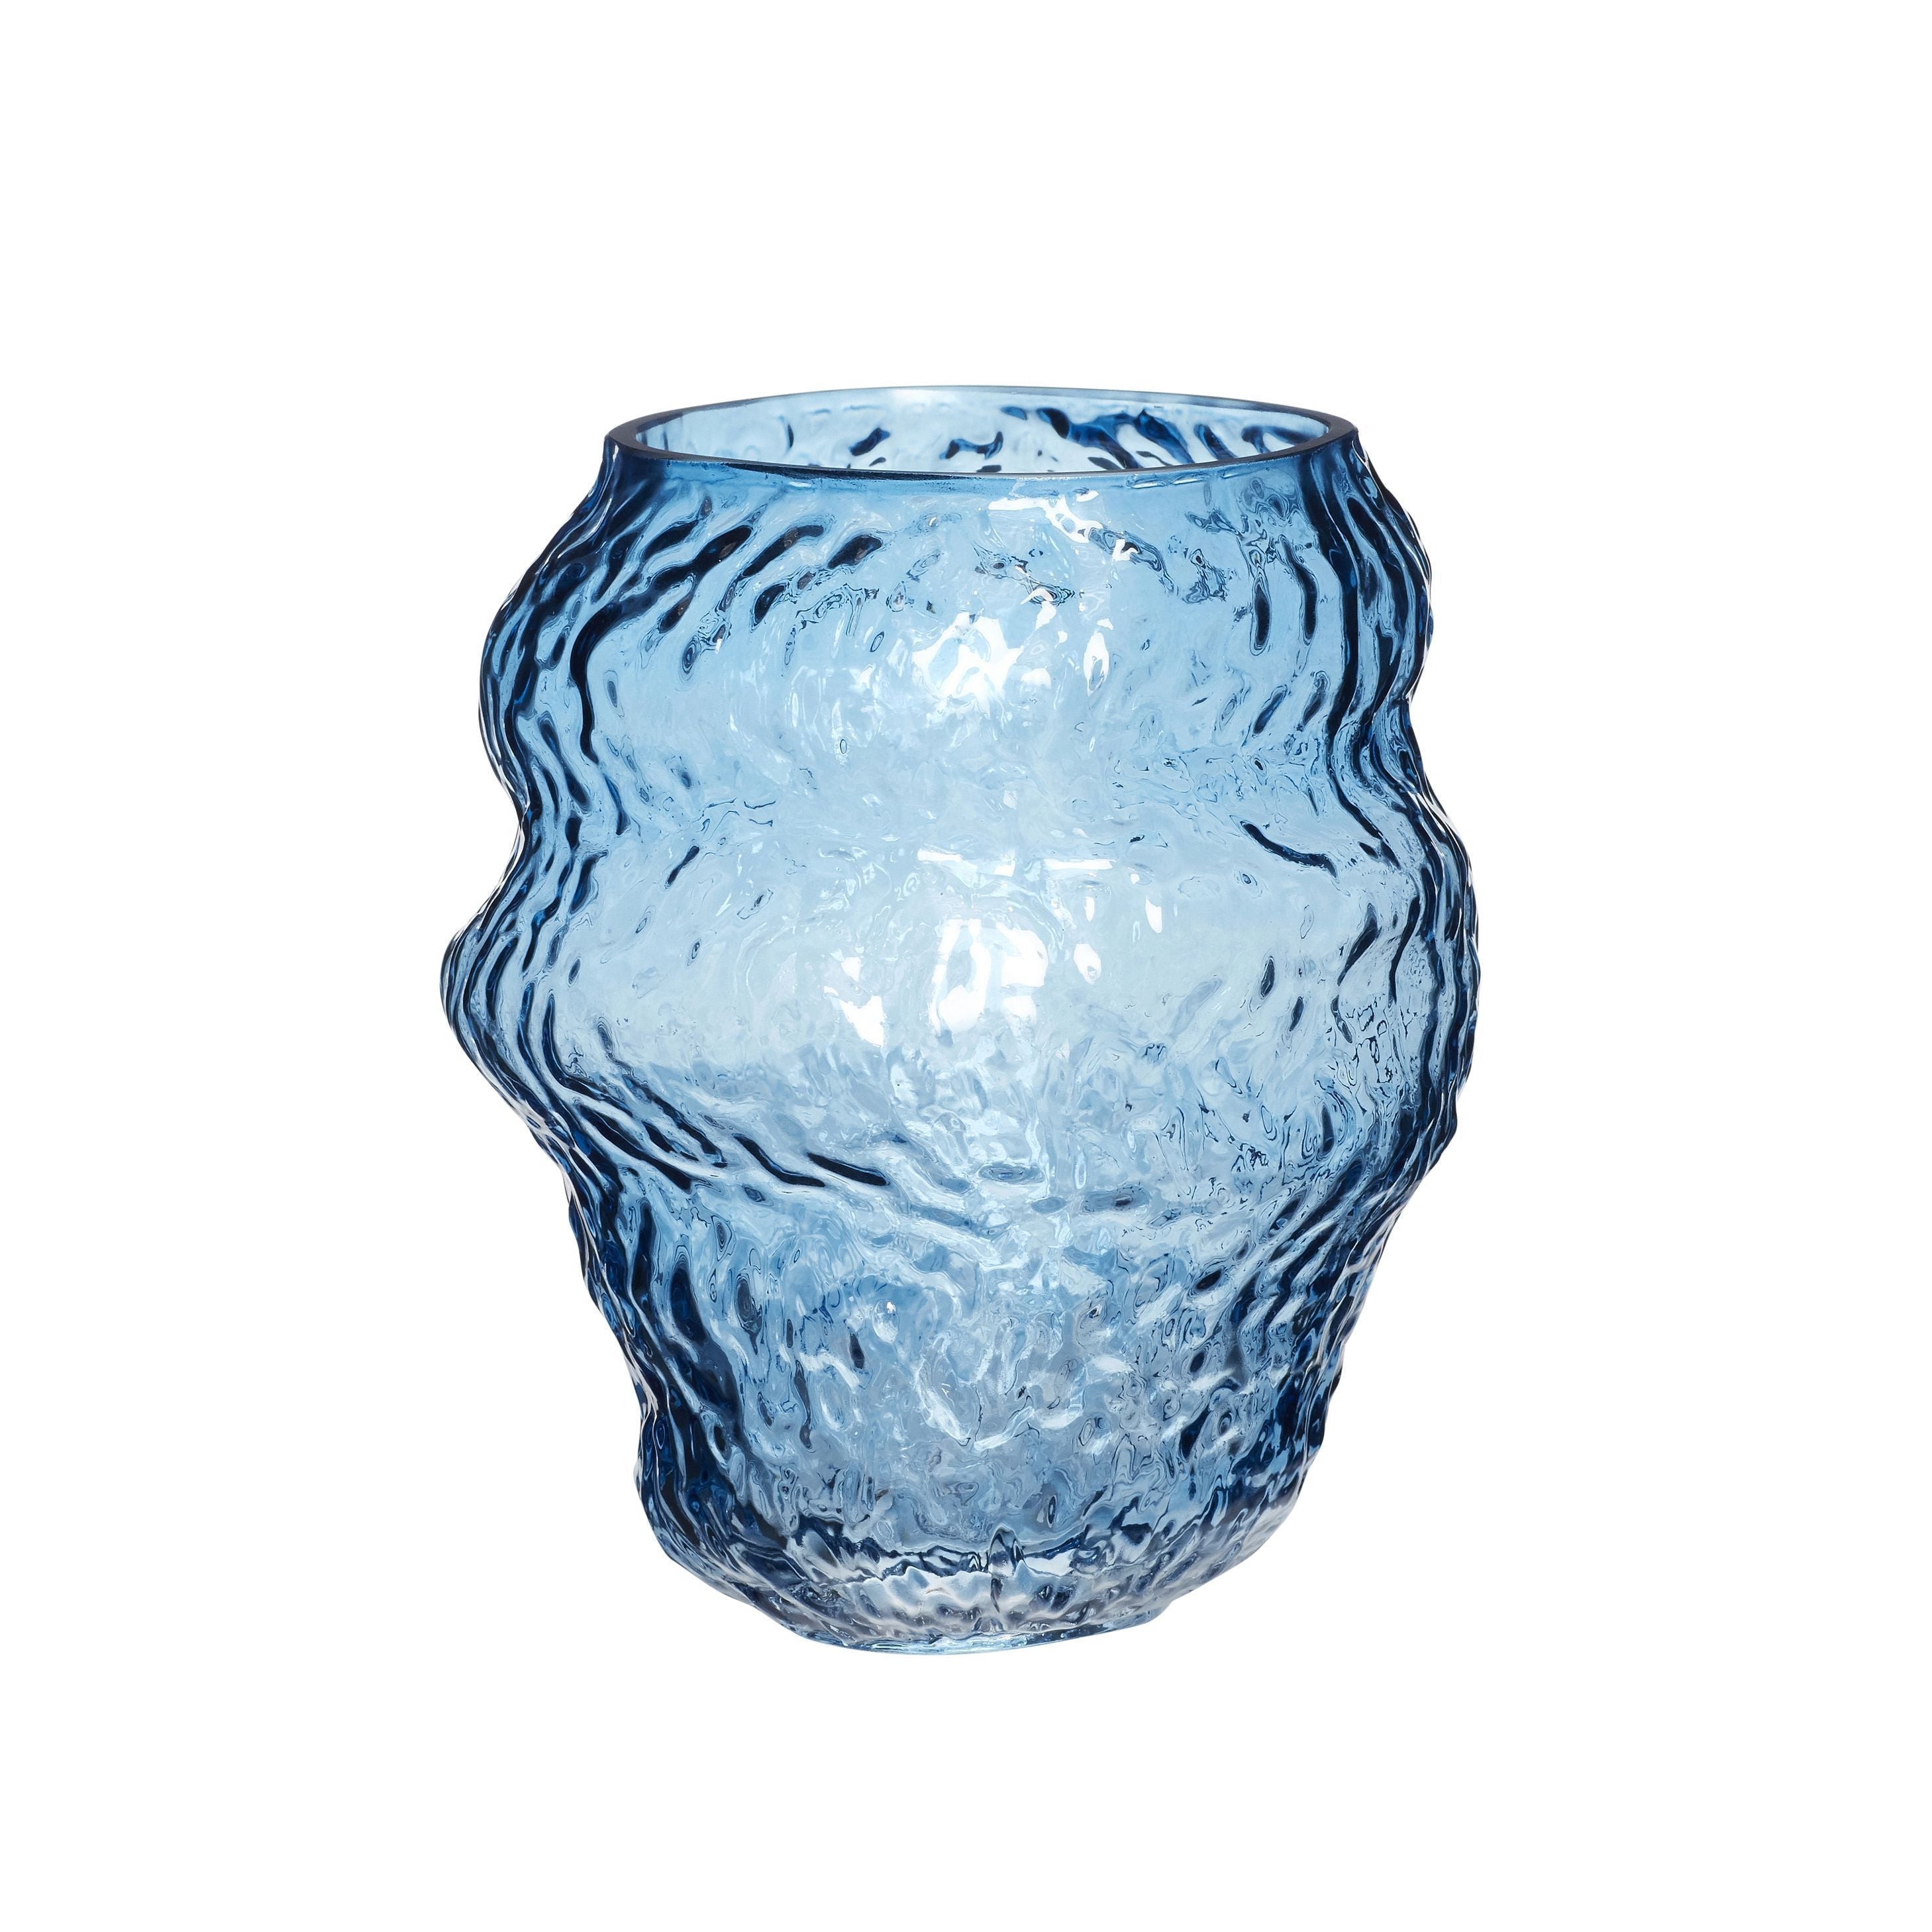 Hübsch Aurora Vase vidrio azul